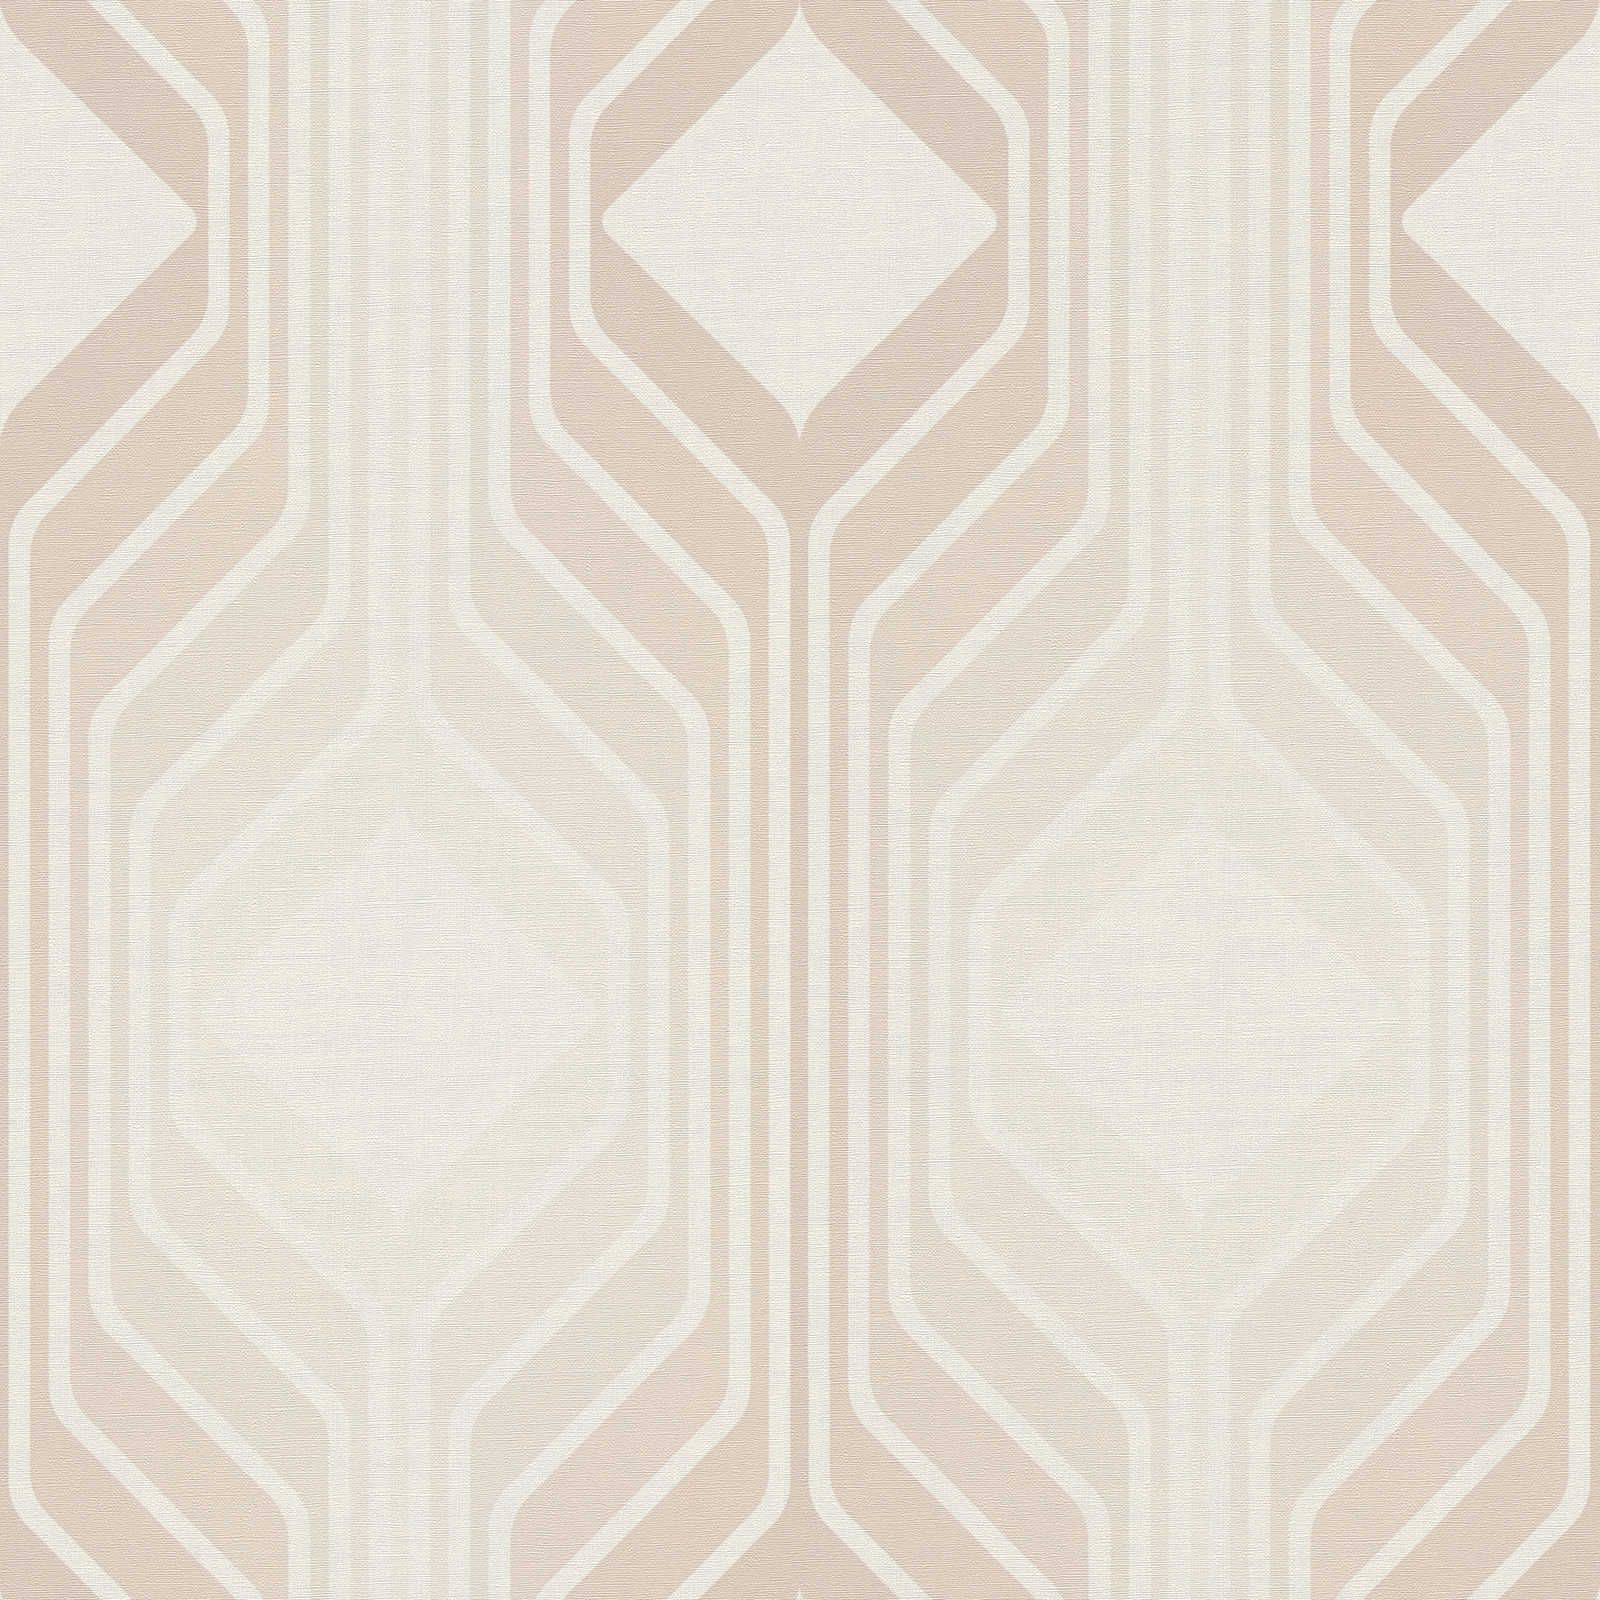 Retro wallpaper with diamond pattern in soft colours - beige, cream, white
